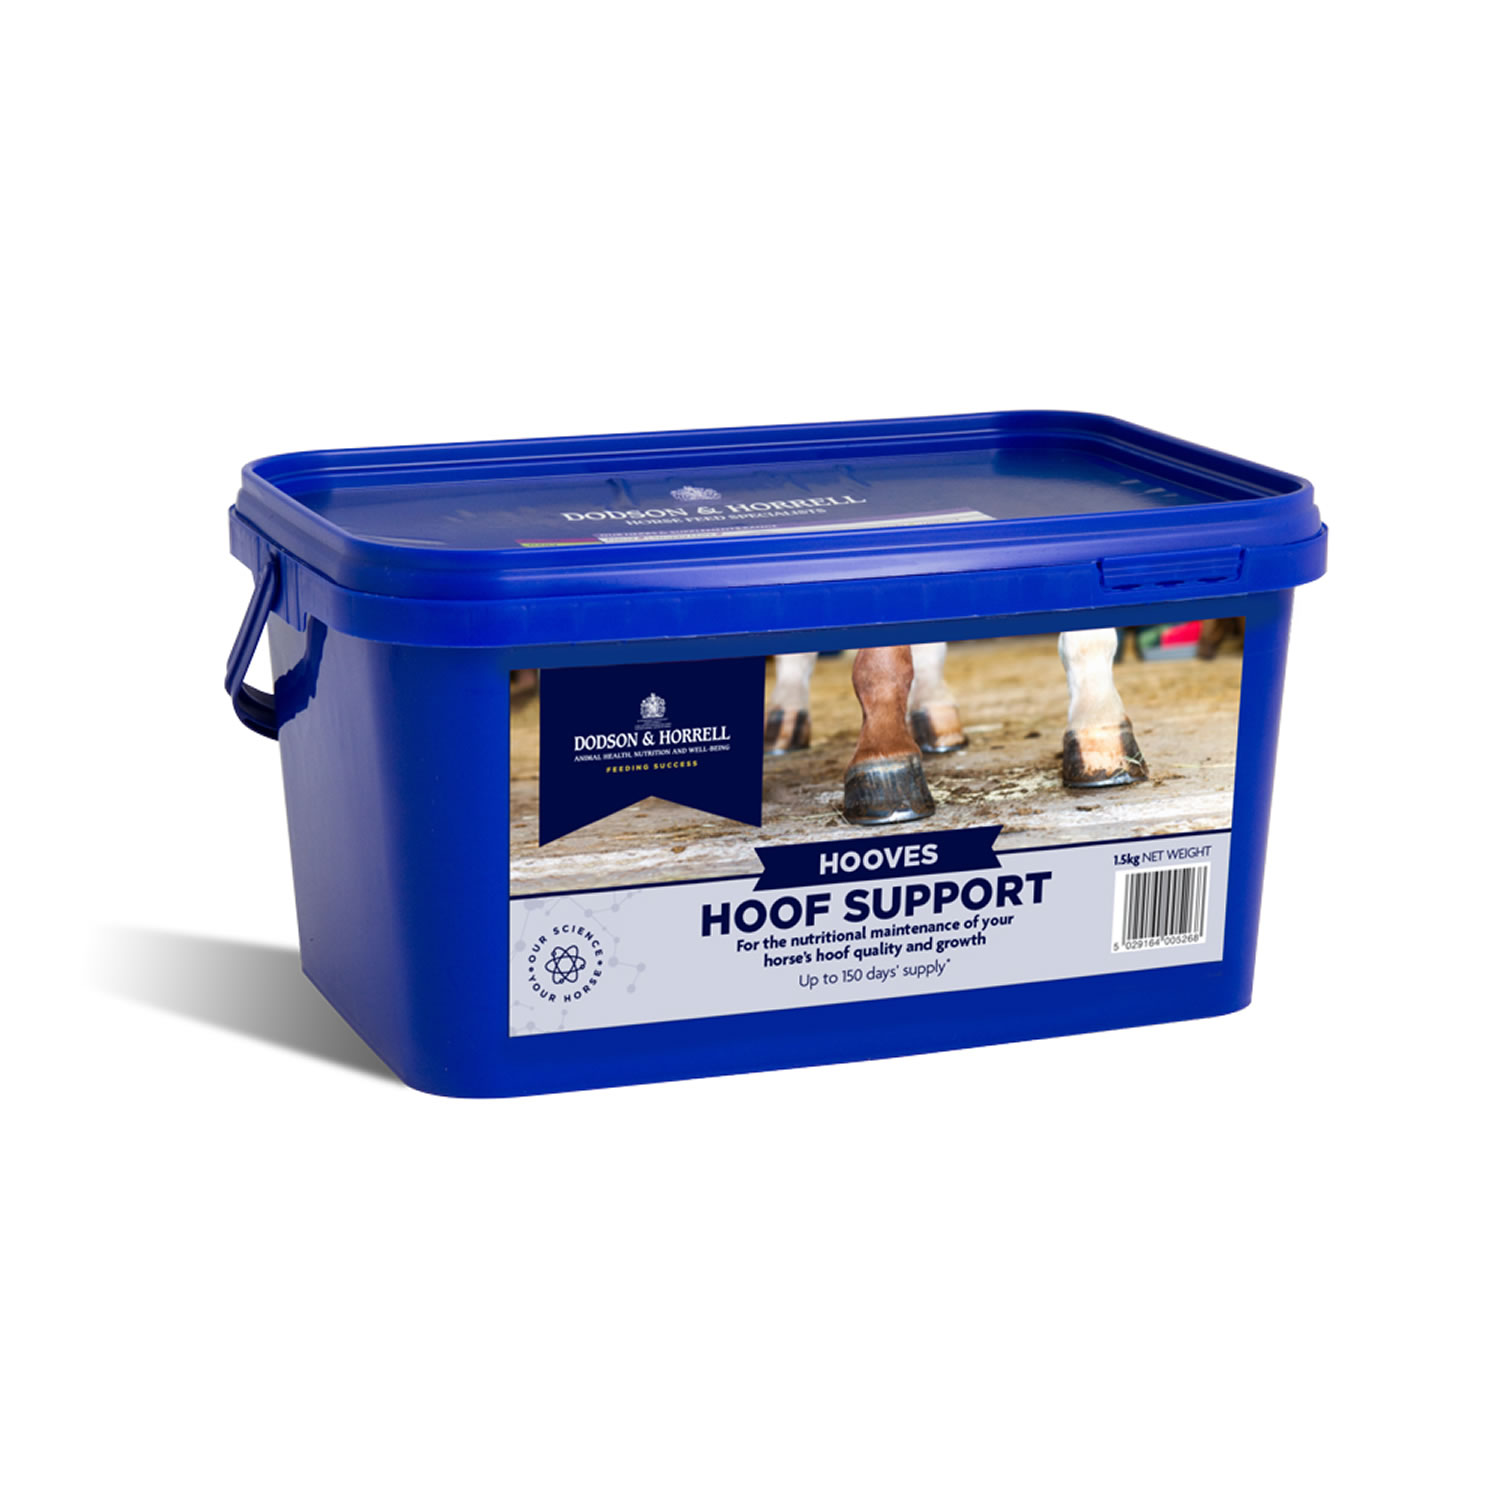 DODSON & HORRELL HOOF SUPPORT 1.5 KG 1.5 KG